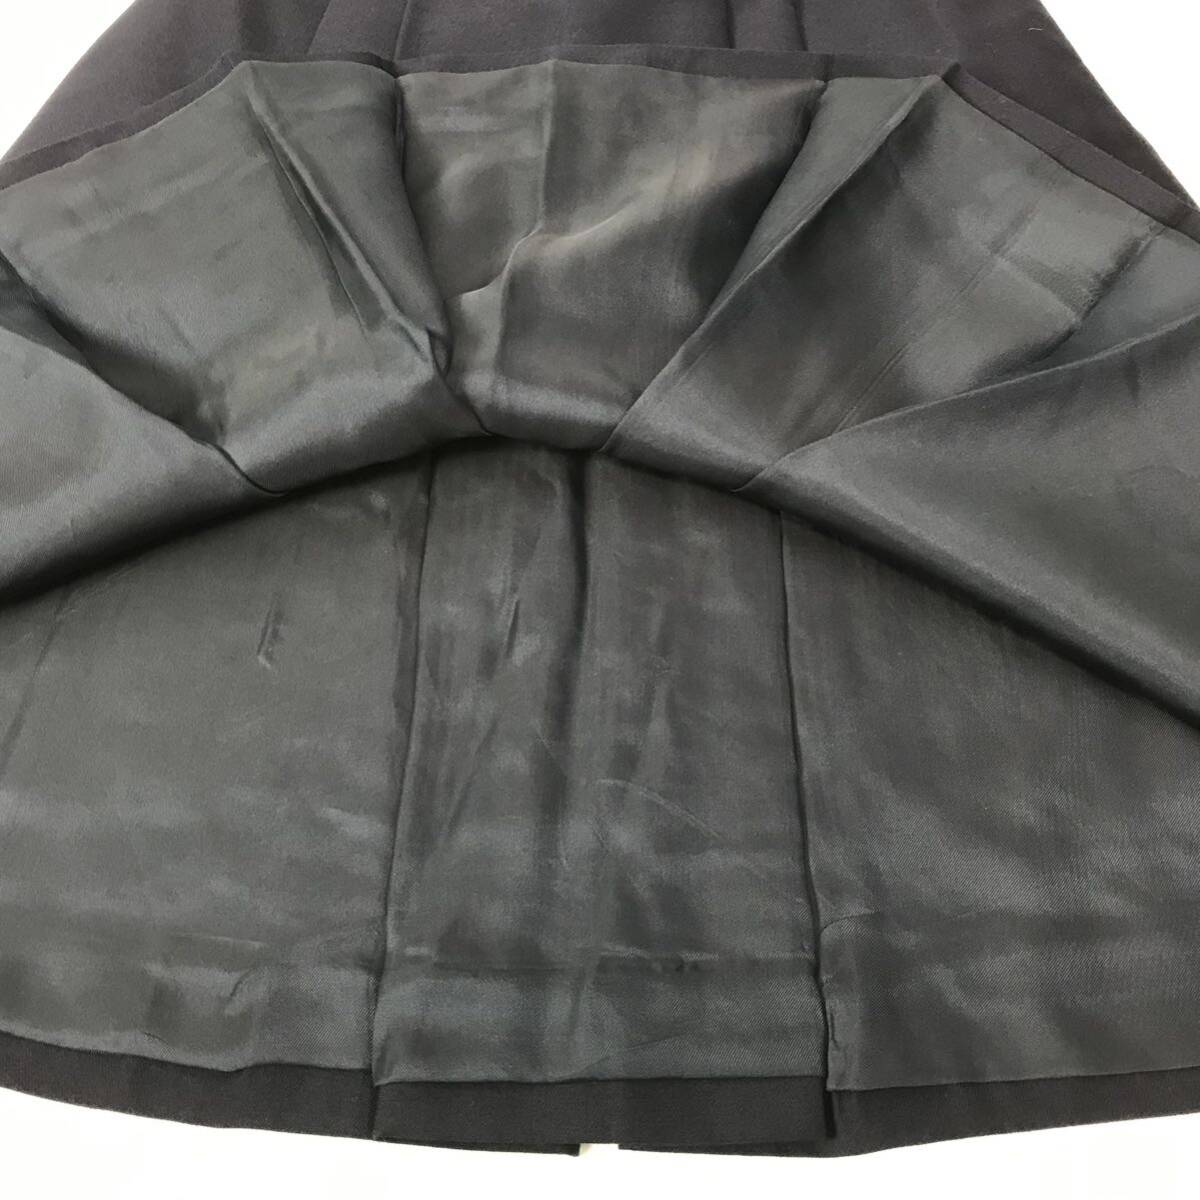 k71 PRADA Prada 2013 колени длина юбка юбка в складку темно-синий формальный бизнес 38 Италия производства шерсть шелк стандартный товар 